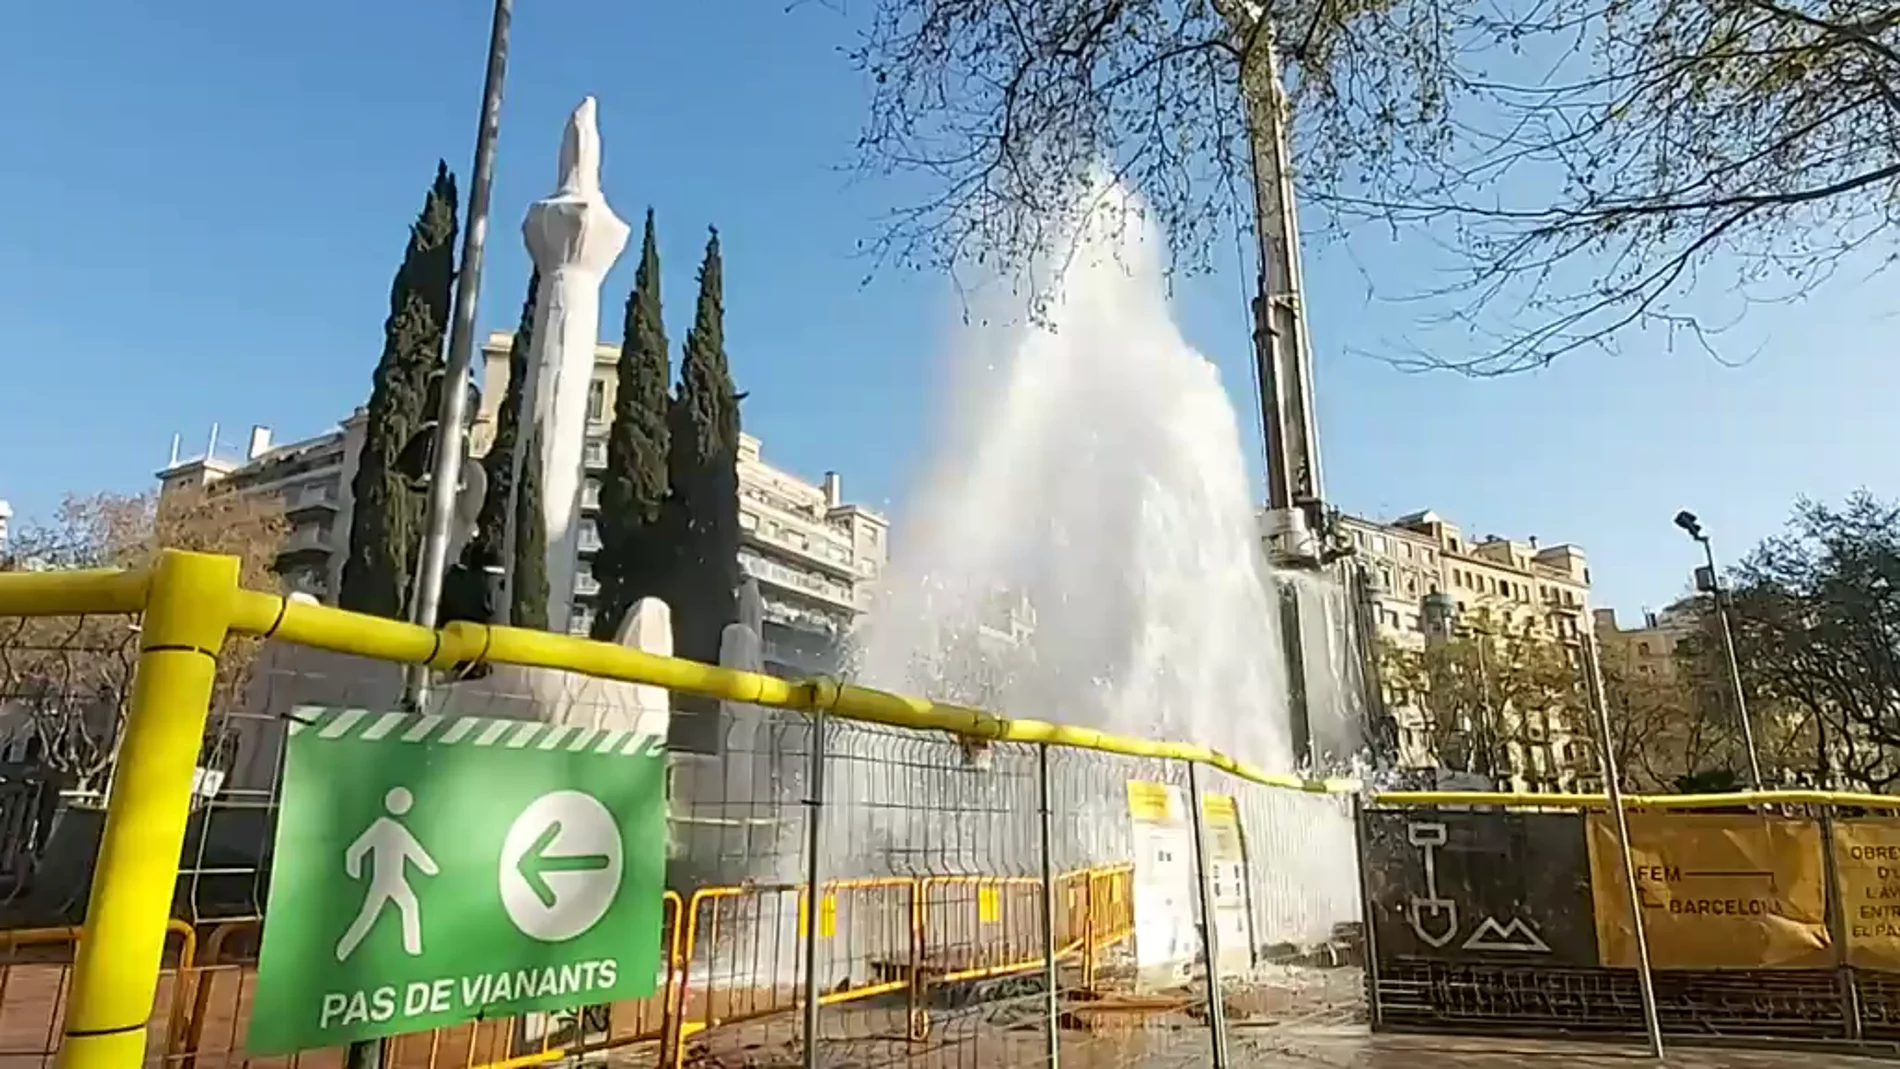 Espectacular fuga de agua en forma de géiser al perforar por error una tubería en Barcelona